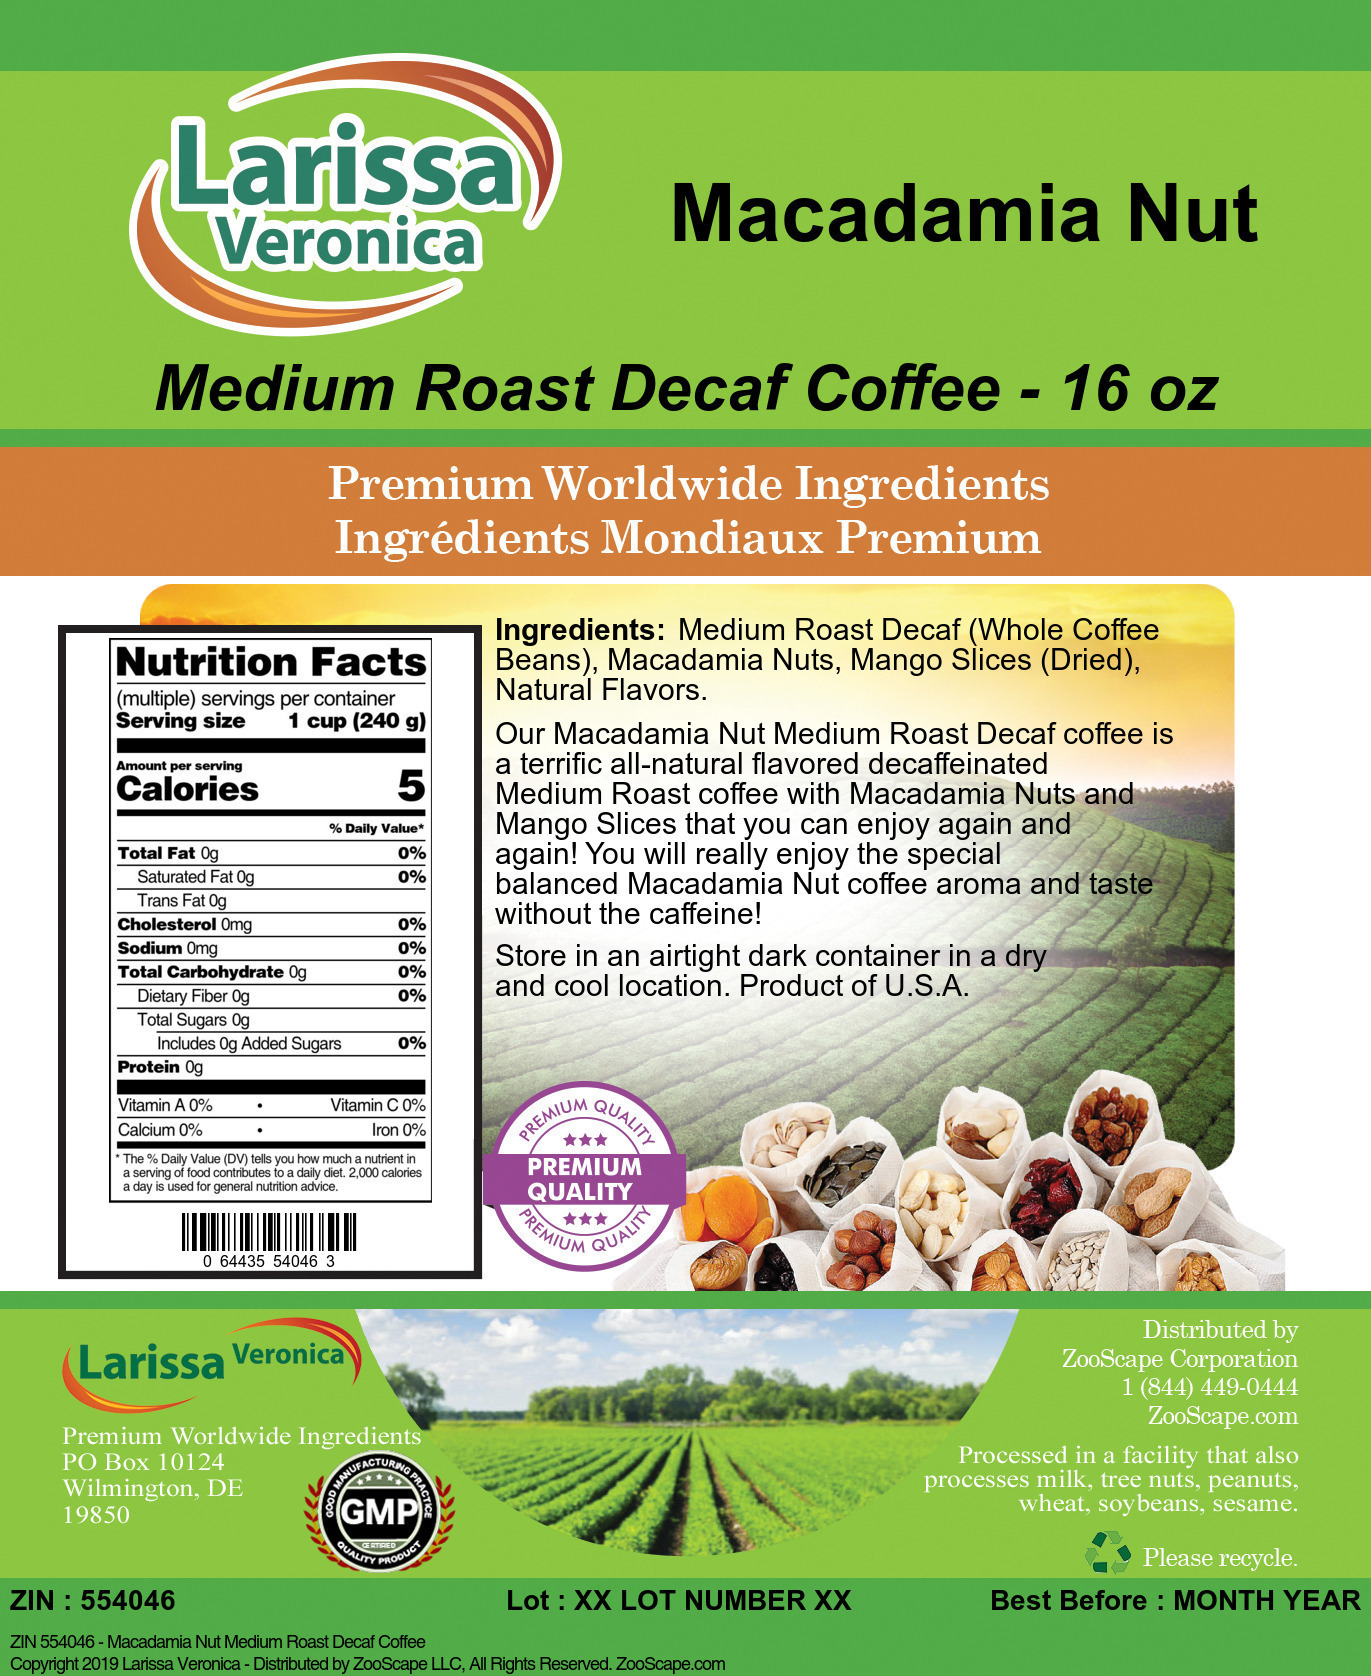 Macadamia Nut Medium Roast Decaf Coffee - Label